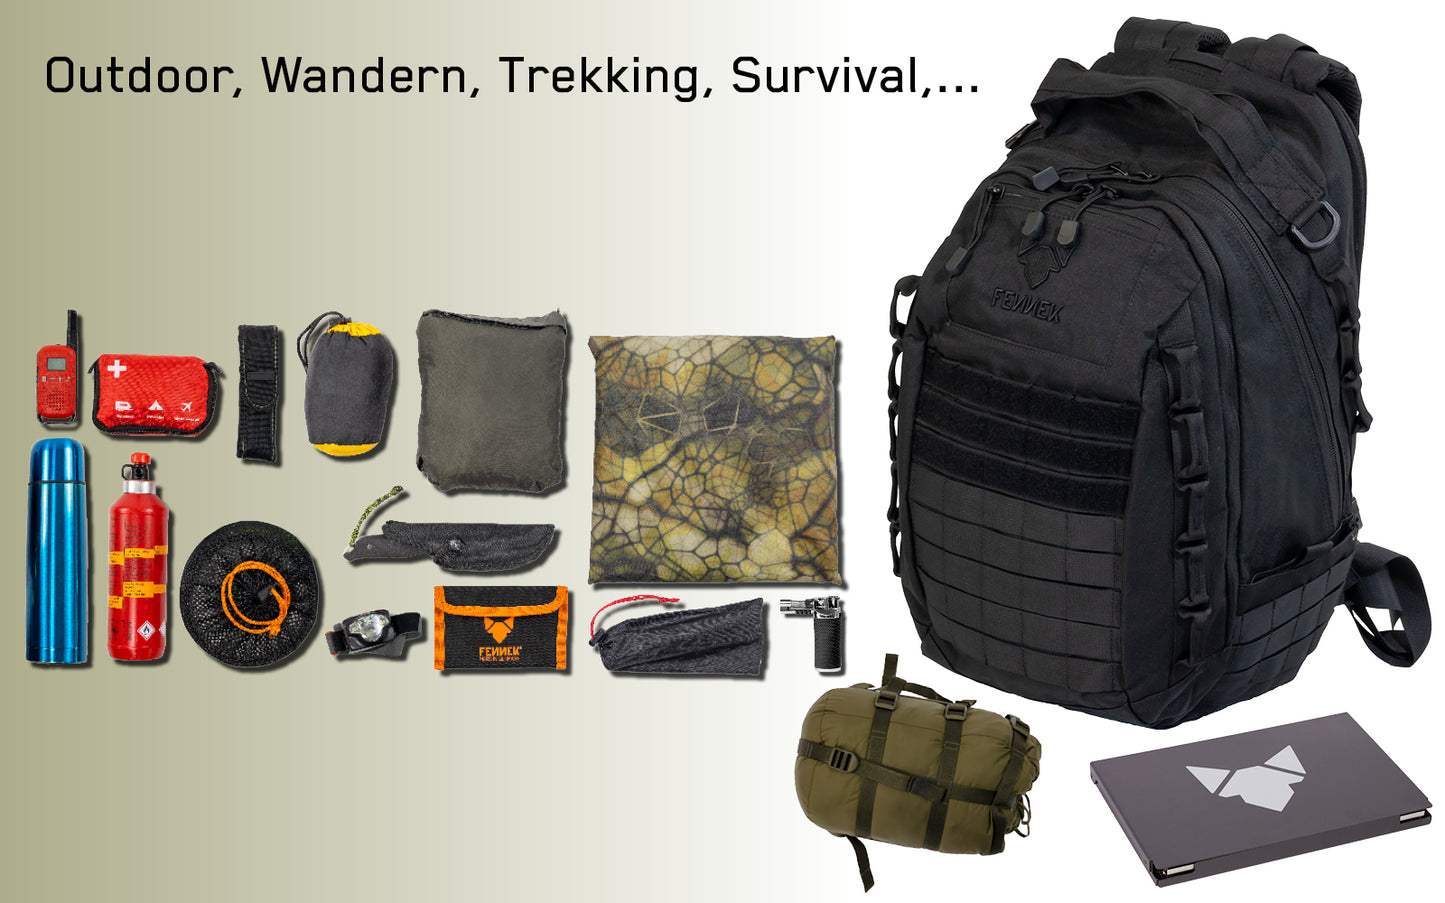 Backpack One2explore mit Kühltasche und Zubehörtasche